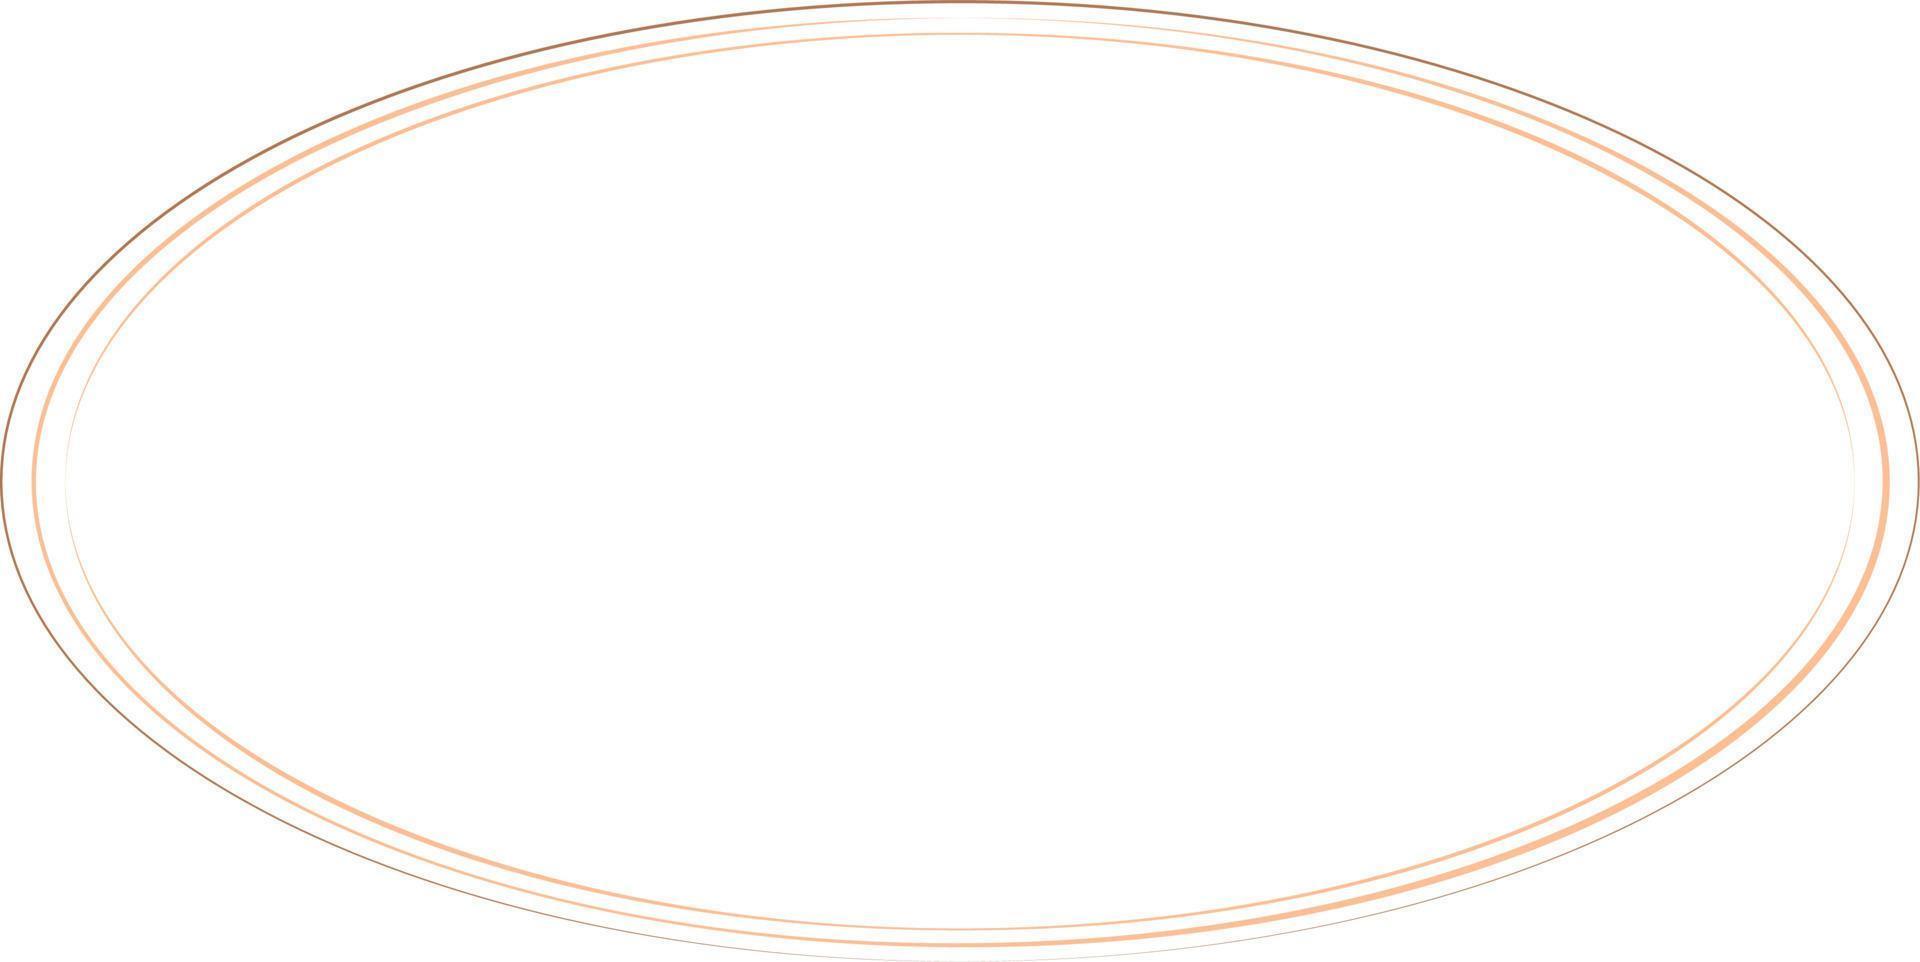 cadres de bordure ovales isolés sur fond blanc. élément de design tendance pour le cadre de bordure, le logo, le tatouage occultant, le symbole, le web, les impressions, les affiches, le modèle, le motif et l'arrière-plan abstrait vecteur